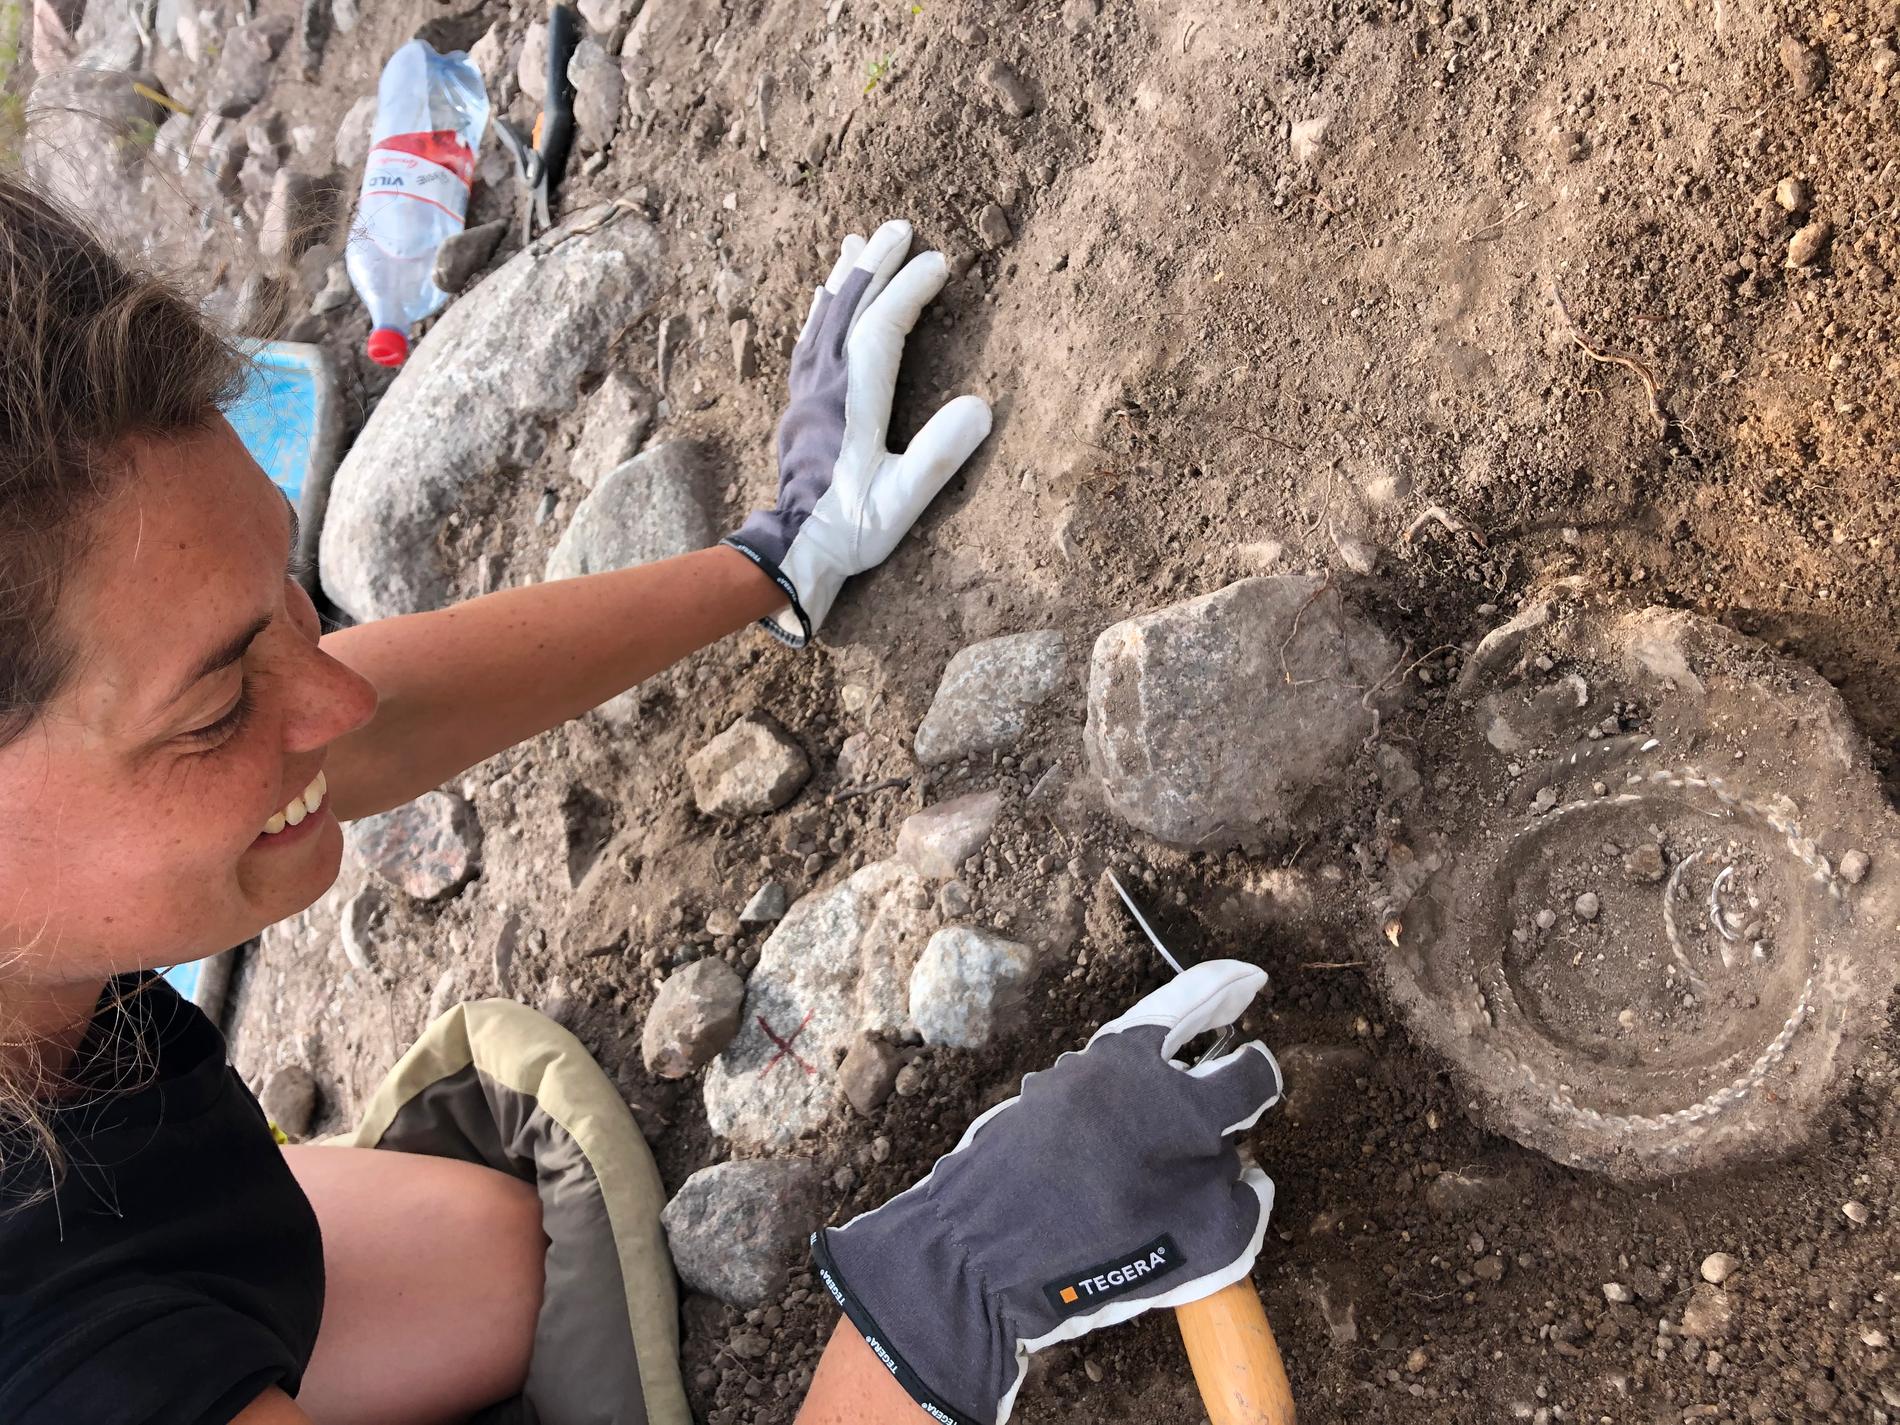 Arkeologerna grävde fram fynd som hittats med en metalldetektor 